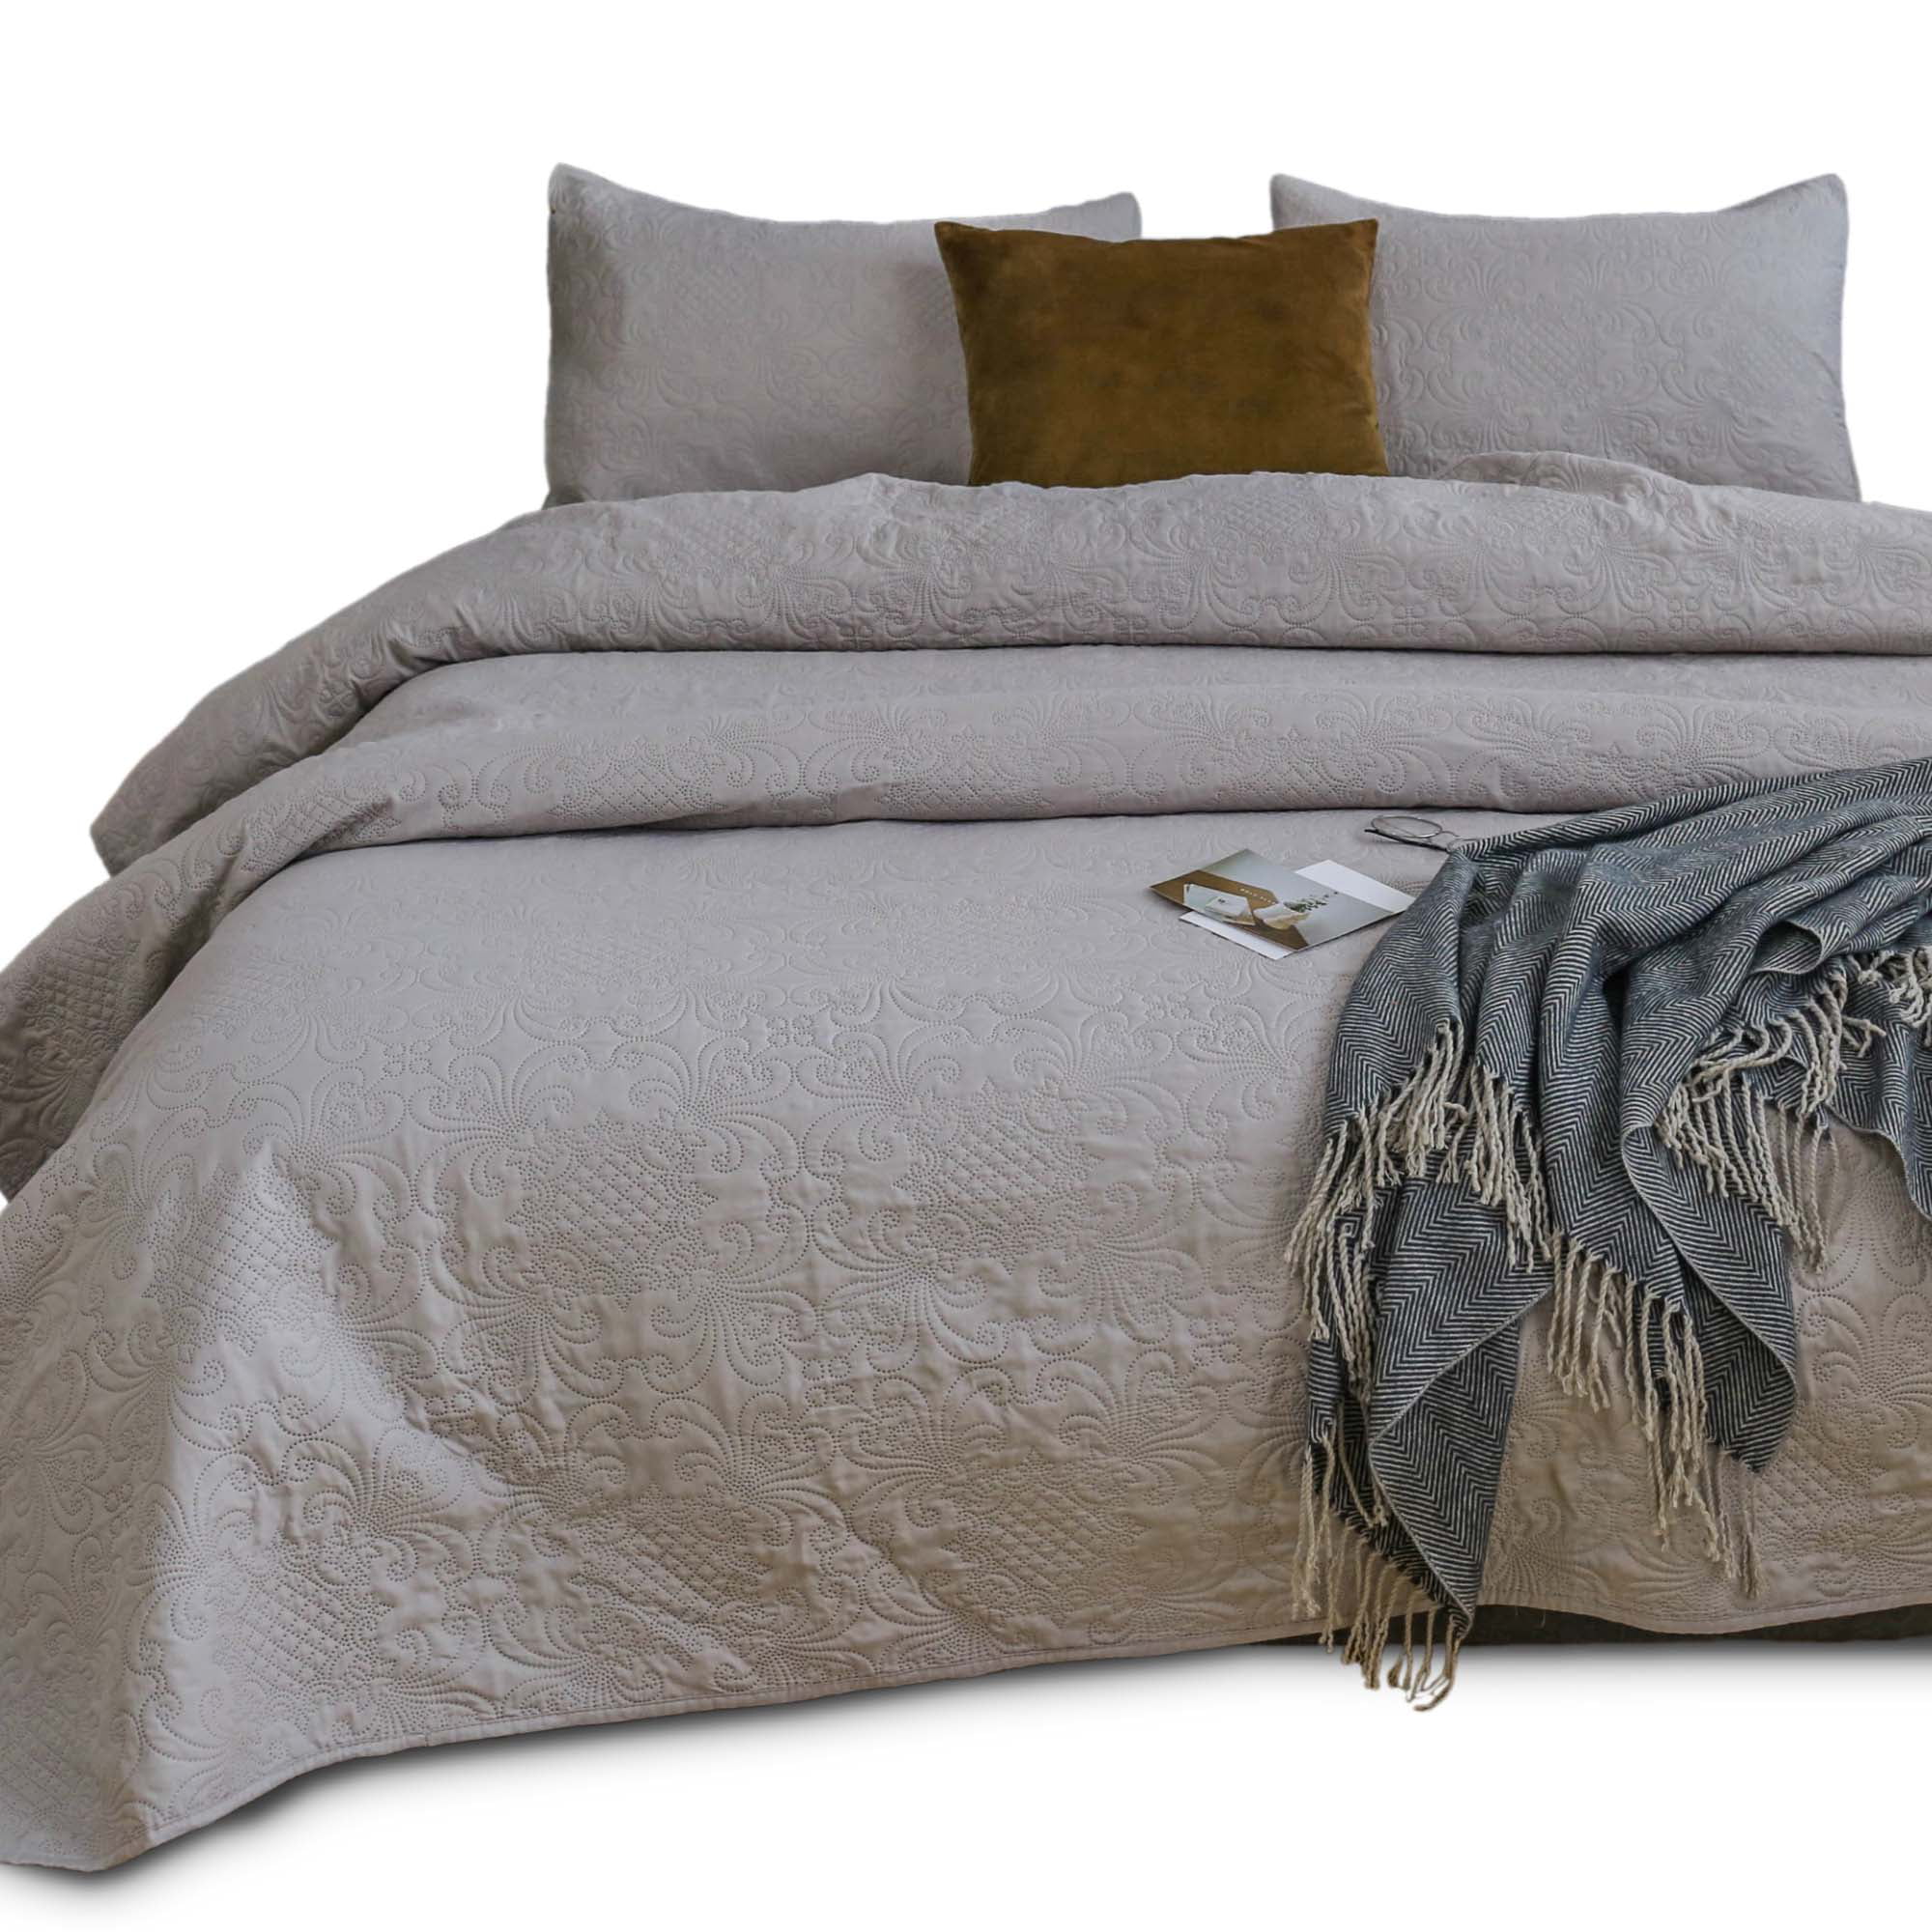 Details about   Kasentex 7 Piece Bed in A Bag Premium Brushed Microfiber Comforter Bedding Set – 